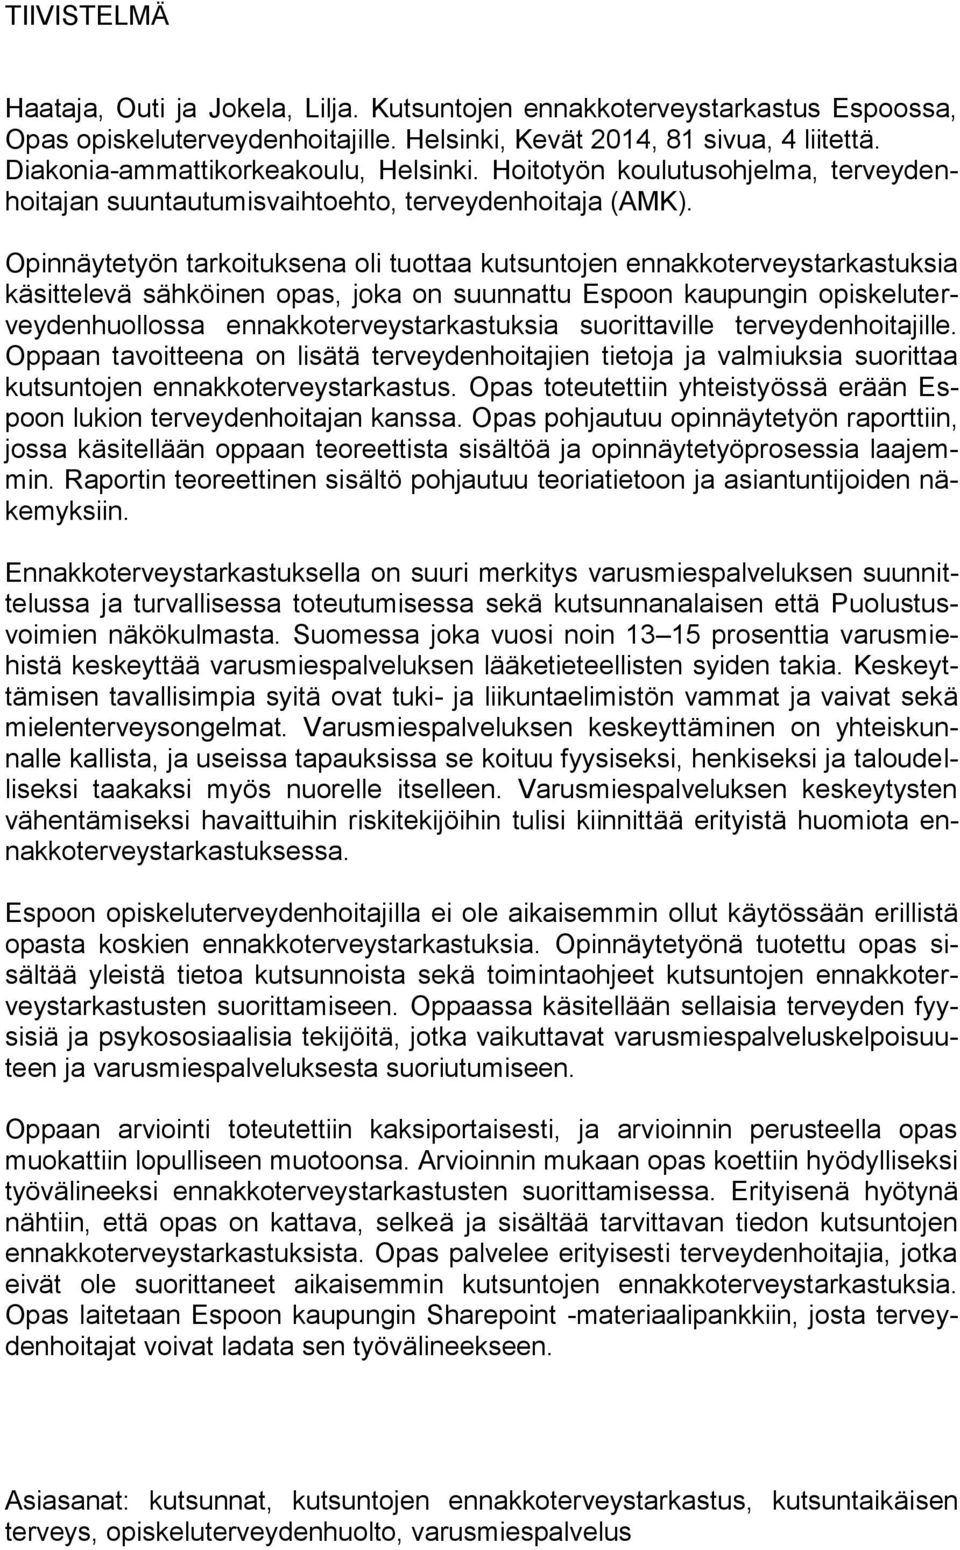 Opinnäytetyön tarkoituksena oli tuottaa kutsuntojen ennakkoterveystarkastuksia käsittelevä sähköinen opas, joka on suunnattu Espoon kaupungin opiskeluterveydenhuollossa ennakkoterveystarkastuksia